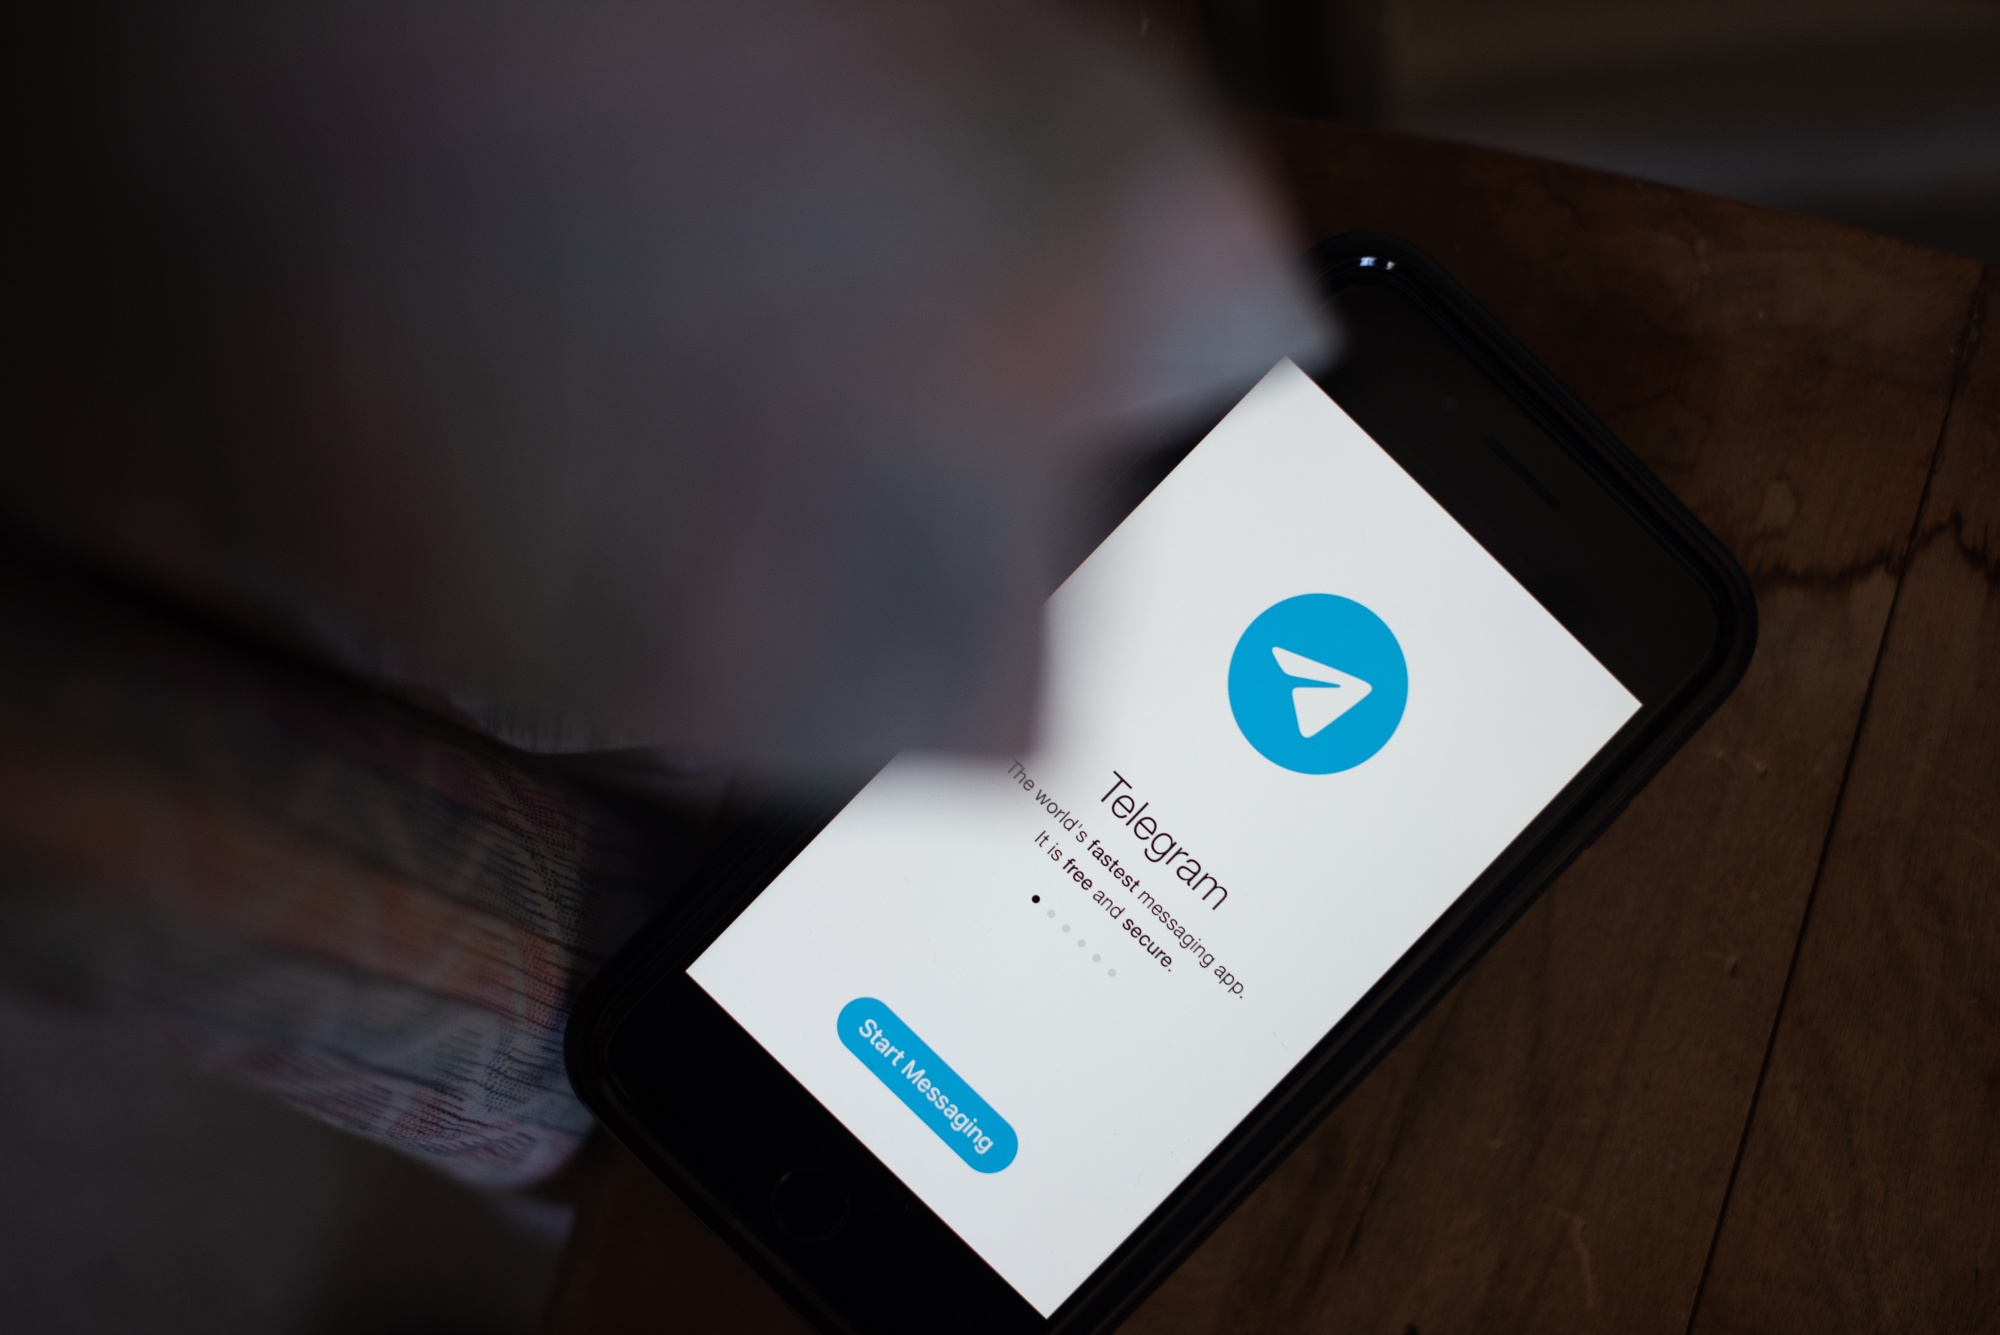 Hong Kong Considers Blocking Telegram Messaging App, Local Paper Says